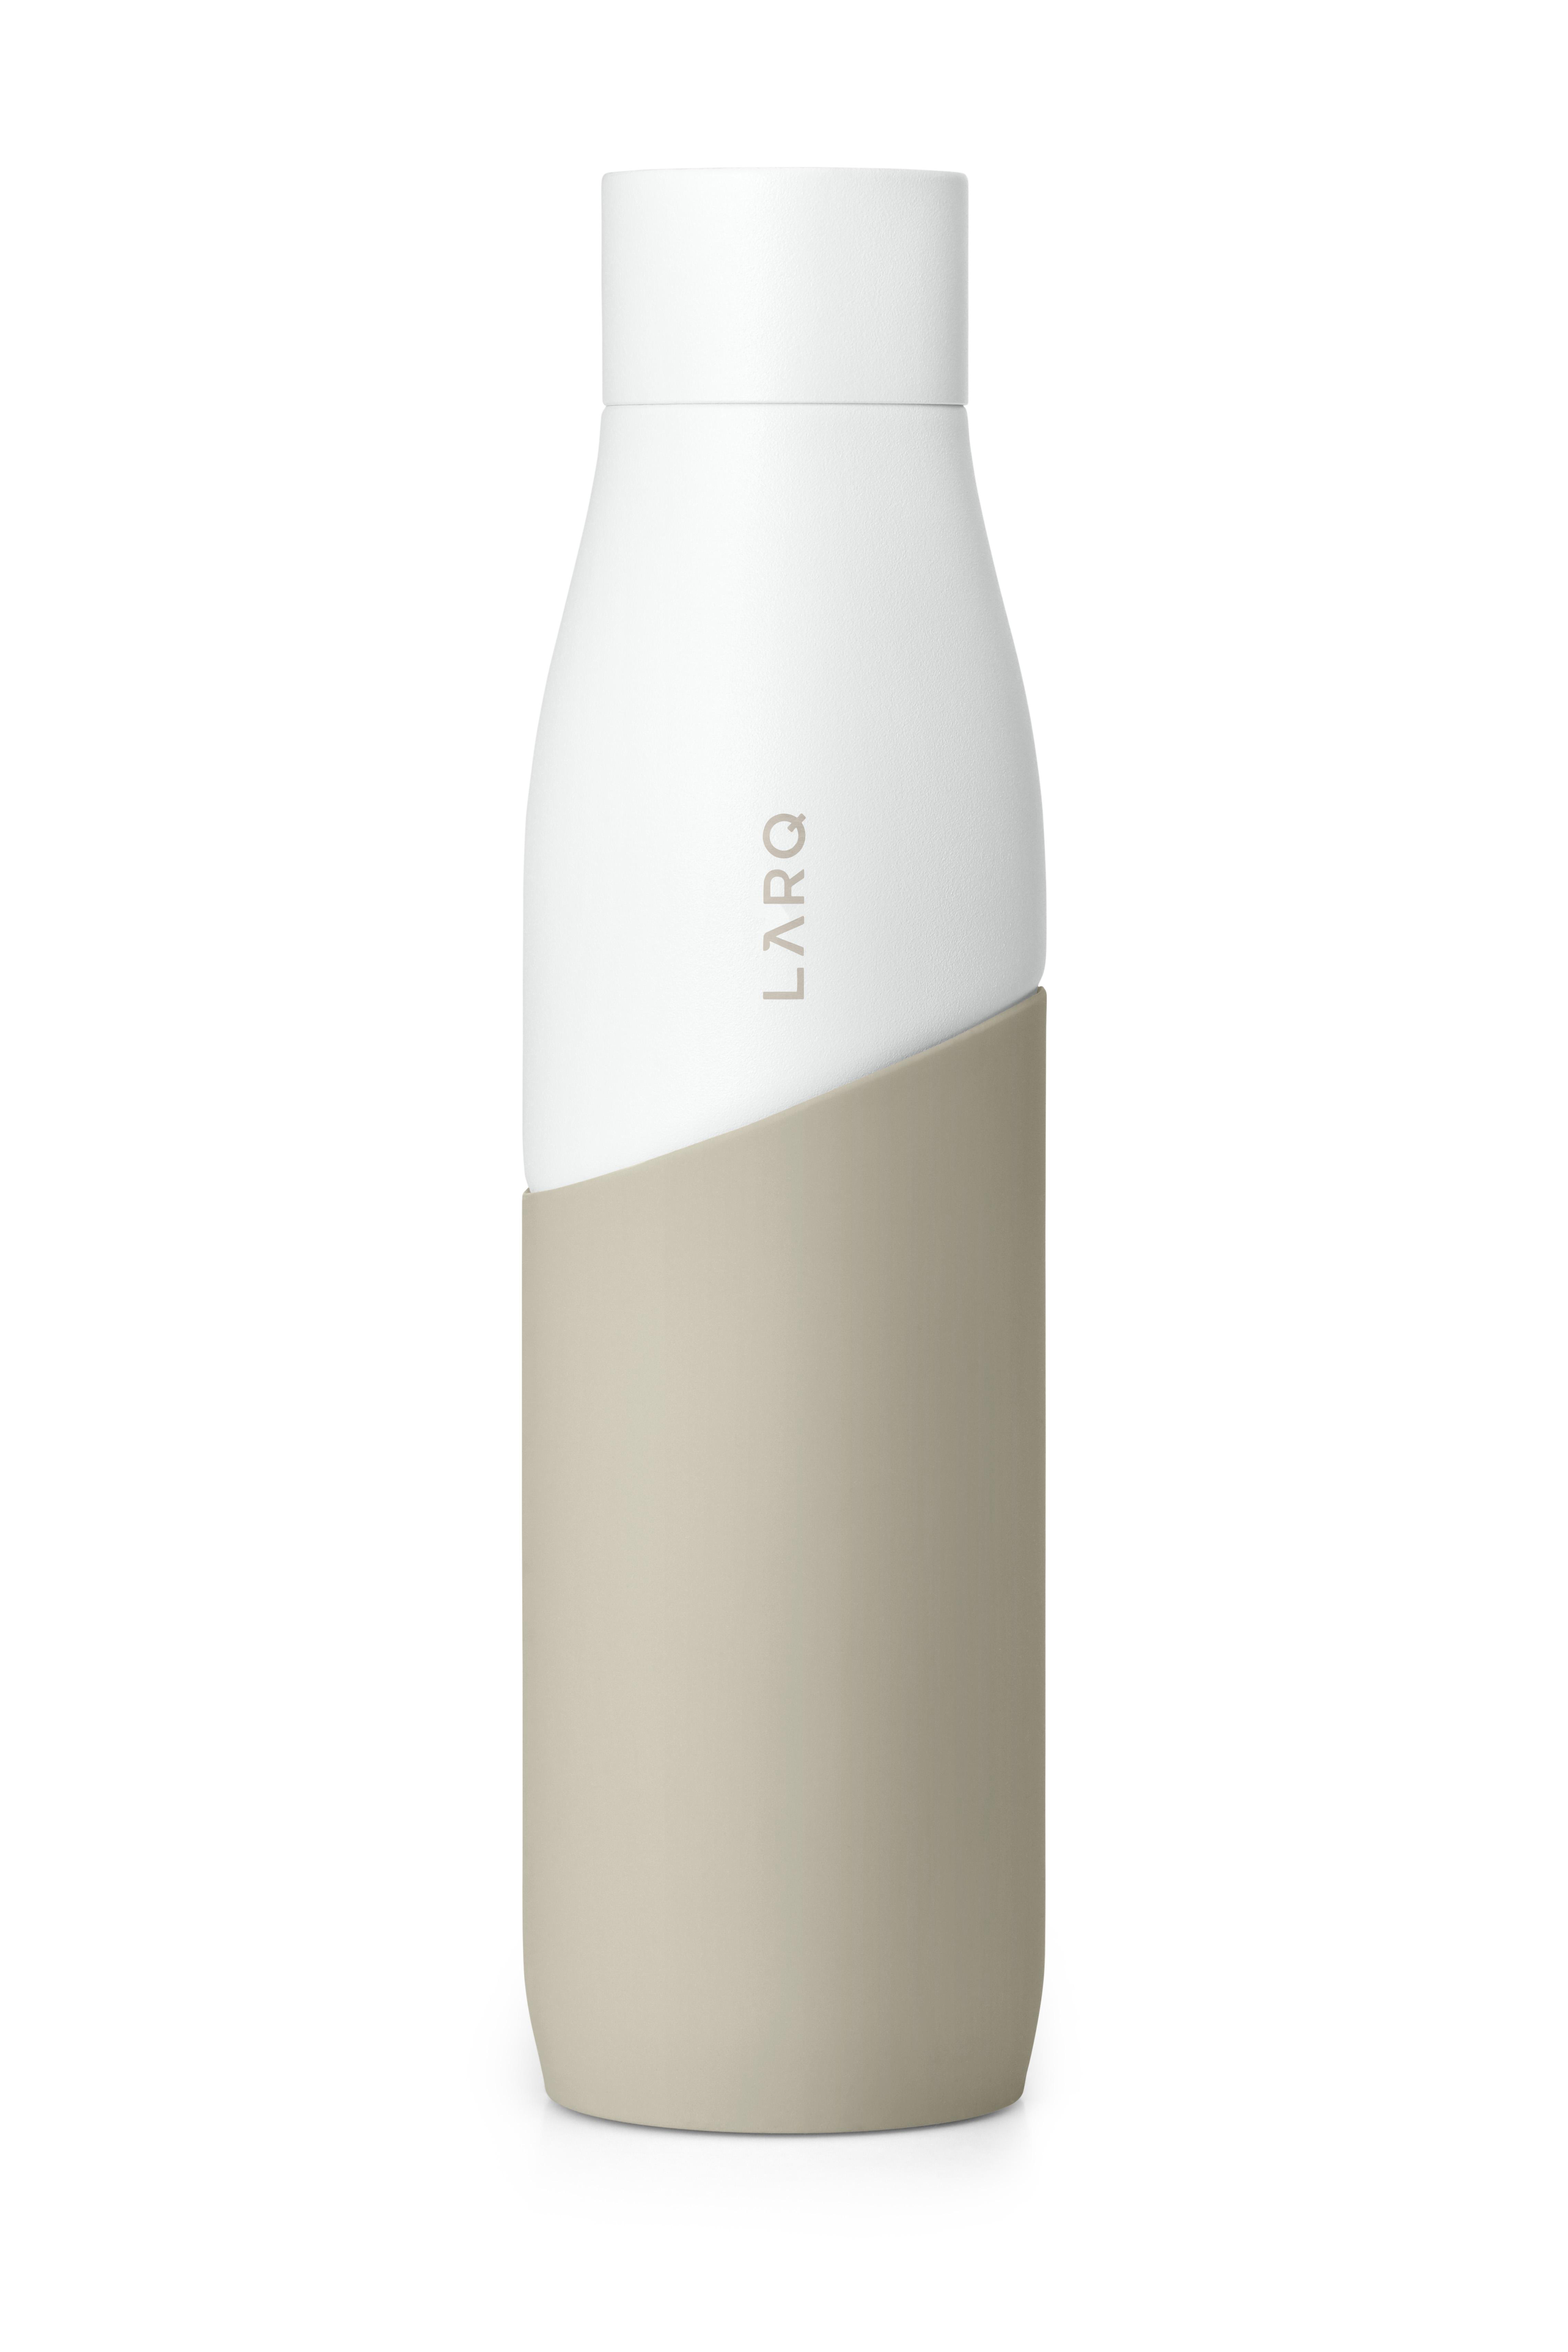 LARQ BSWD095A Bottle Trinkflasche Movement Terra white/Dune edition